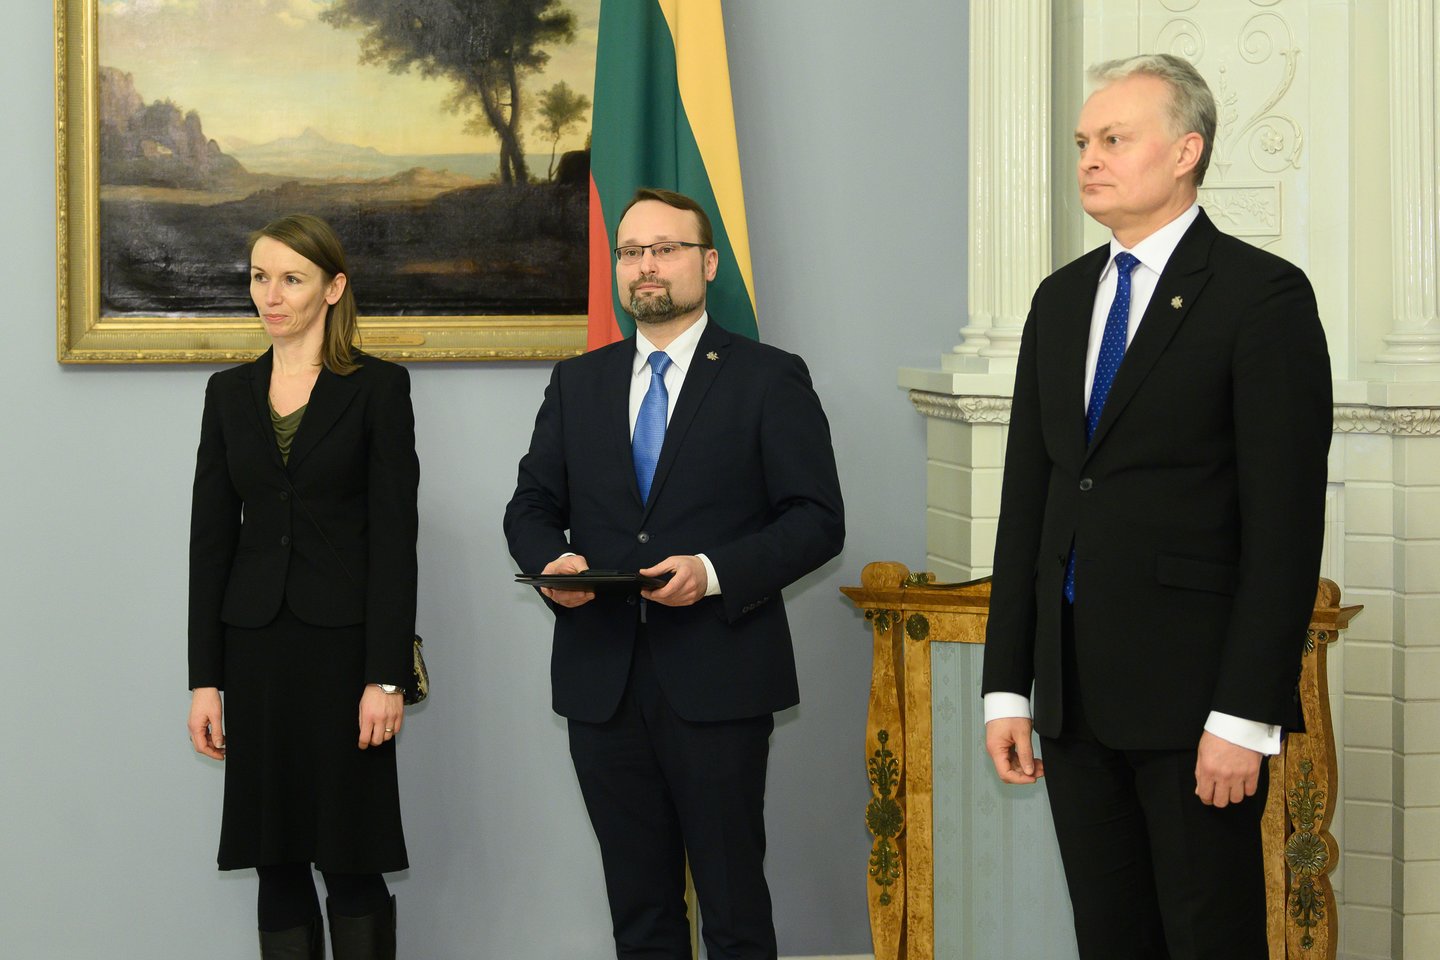 Vasario 13 d. Nacionalinę premiją Prezidentūroje iš šalies vadovo Gitano Nausėdos rankų turėjusi atsiimti aktorė Viktorija Kuodytė į rūmus įleista nebuvo.<br>V.Skaraičio nuotr.